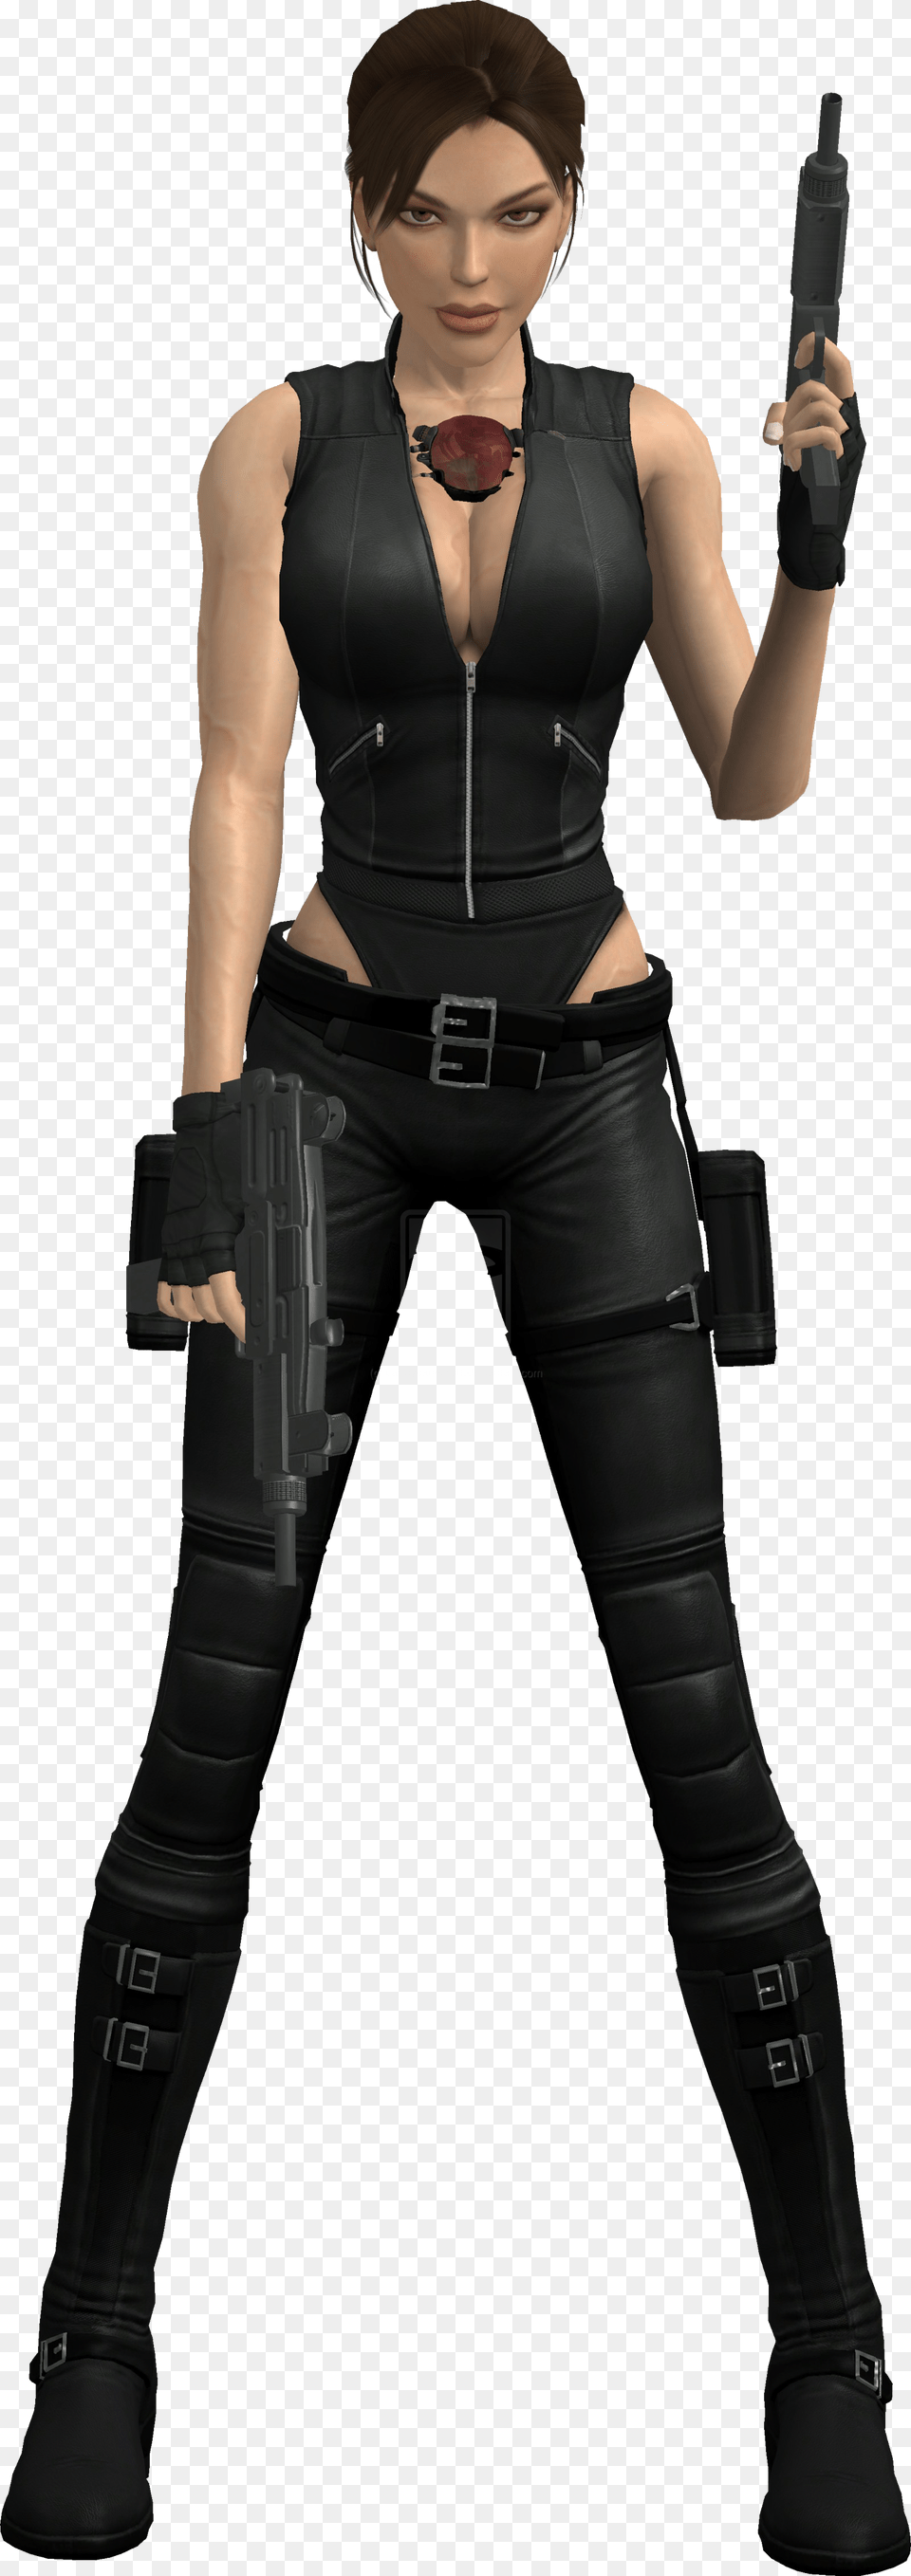 Tomb Raider Underworld Lara Croft Clothes, Weapon, Person, Handgun, Gun Free Png